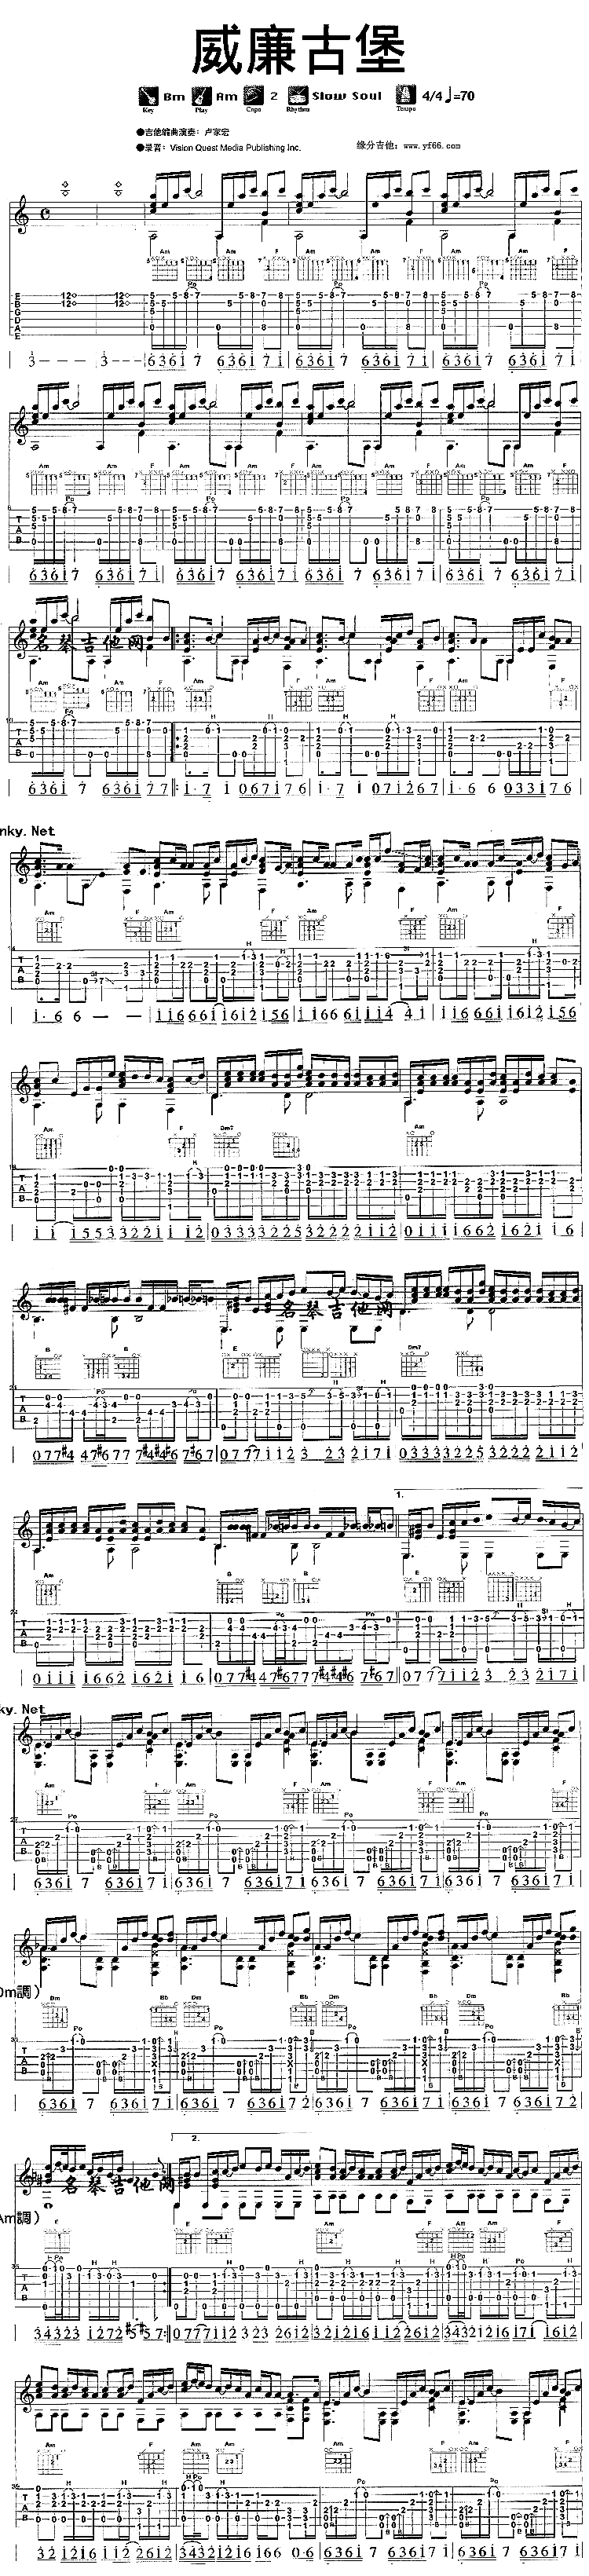 威廉古堡吉他谱-周杰伦六线谱原版-高清简单图片谱